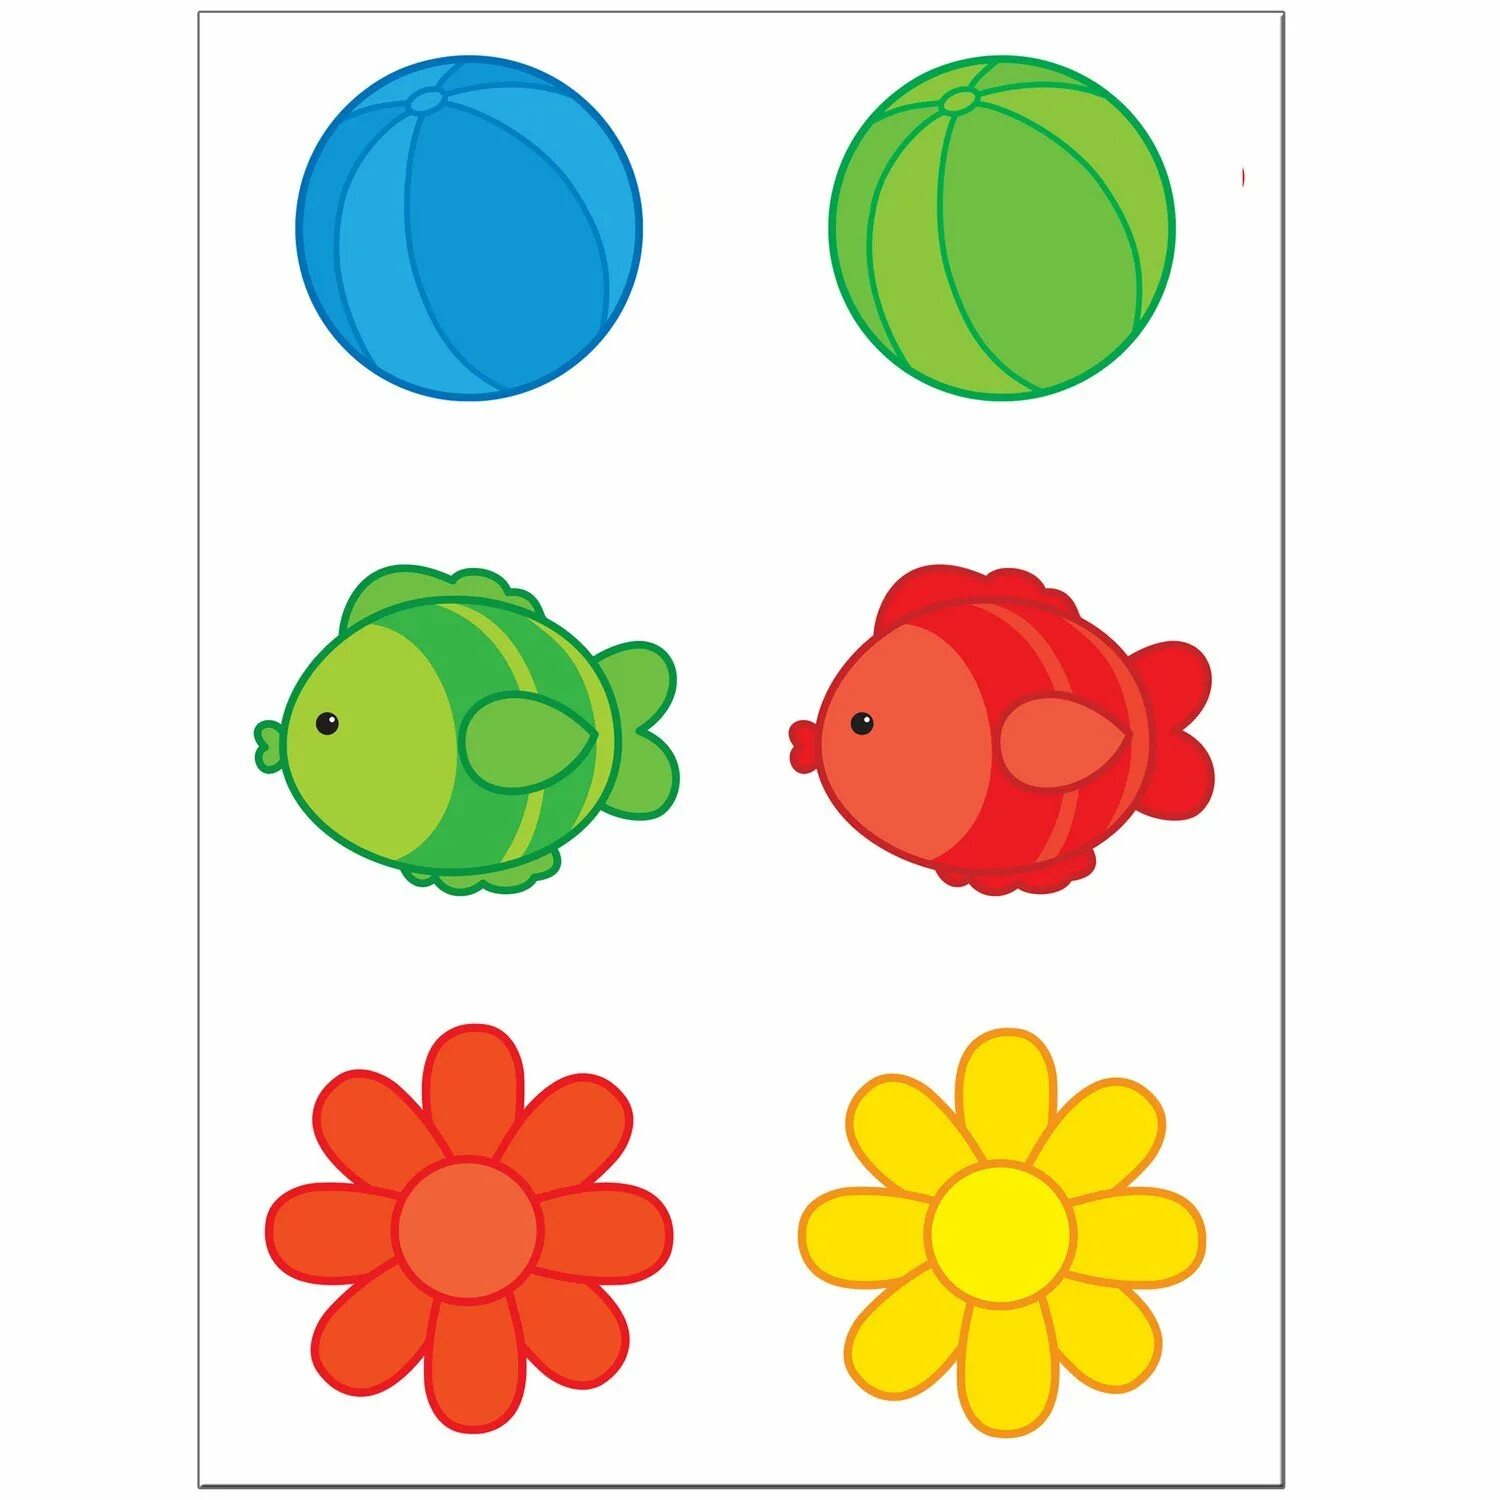 Цвета детям 2. Игротека шсг 1+ Подбери пару. Предметы по цвету для детей. Одинаковые предметы разного цвета. Подбери предметы по цвету.